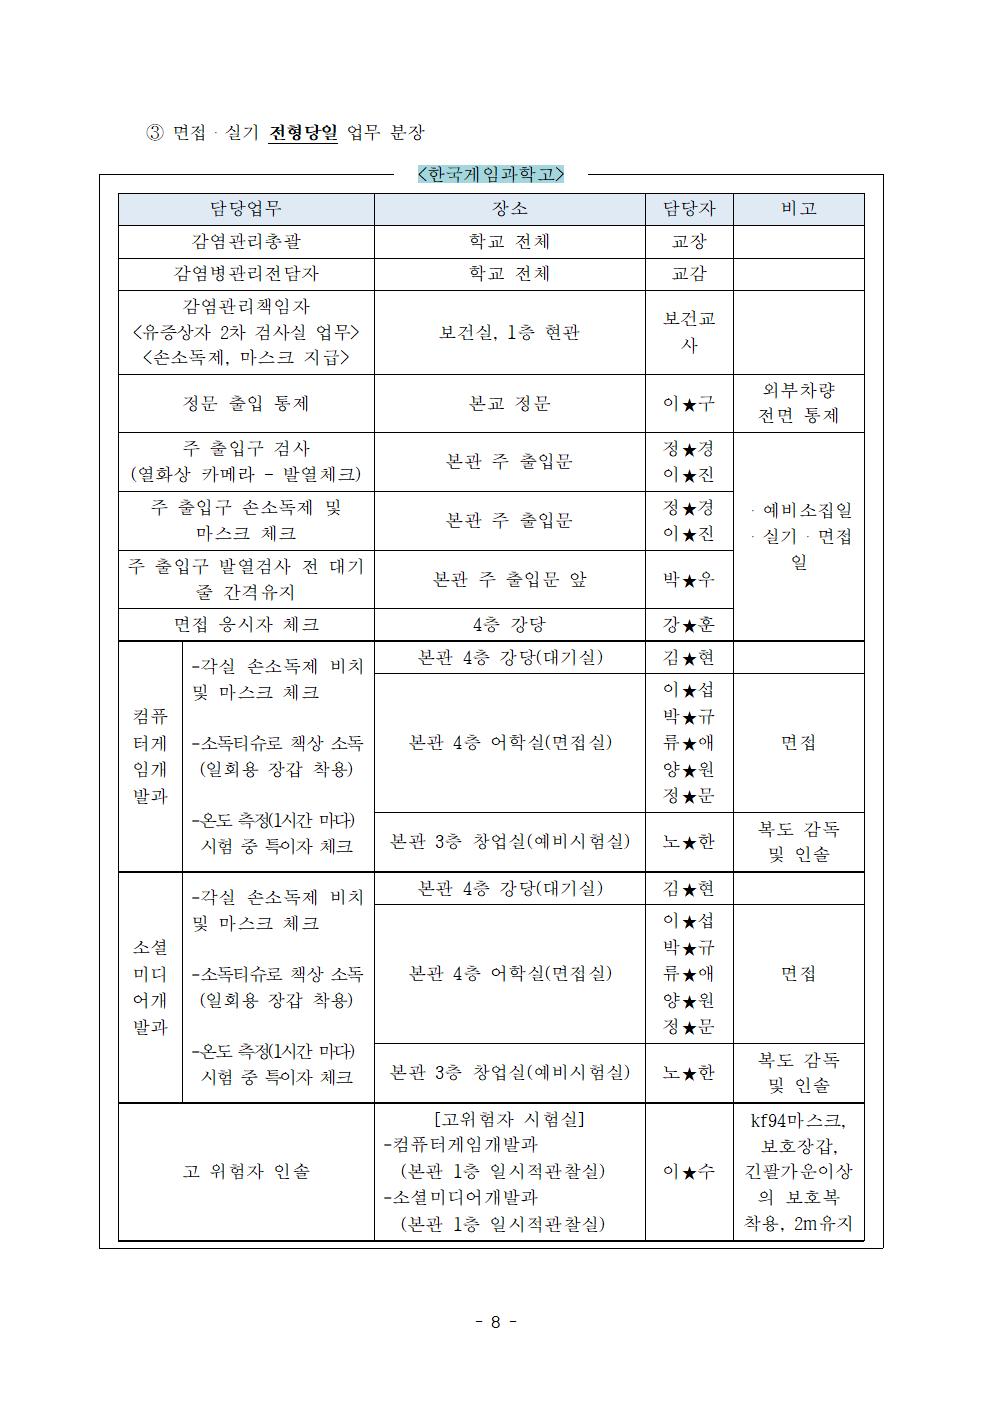 2021학년도 학교별 입학전형 안전관리 계획_한국게임과학고(홈페이지게시)010